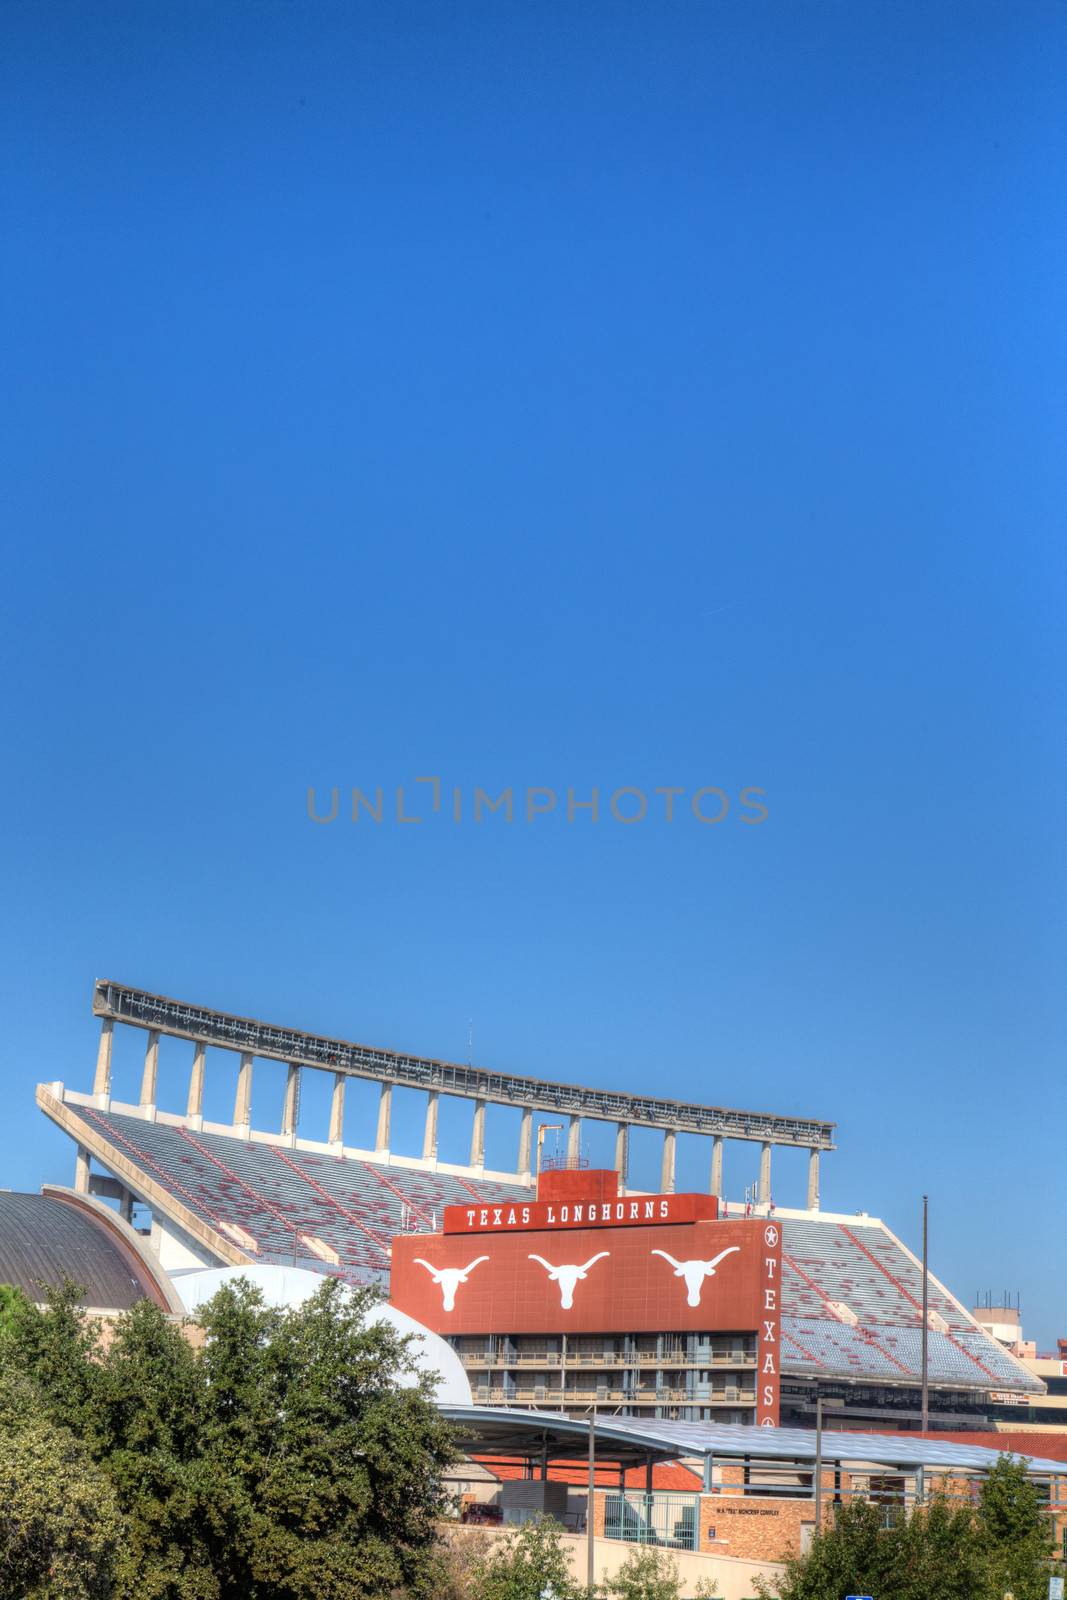 Darrell K Royal Texas Memorial Stadium by wolterk